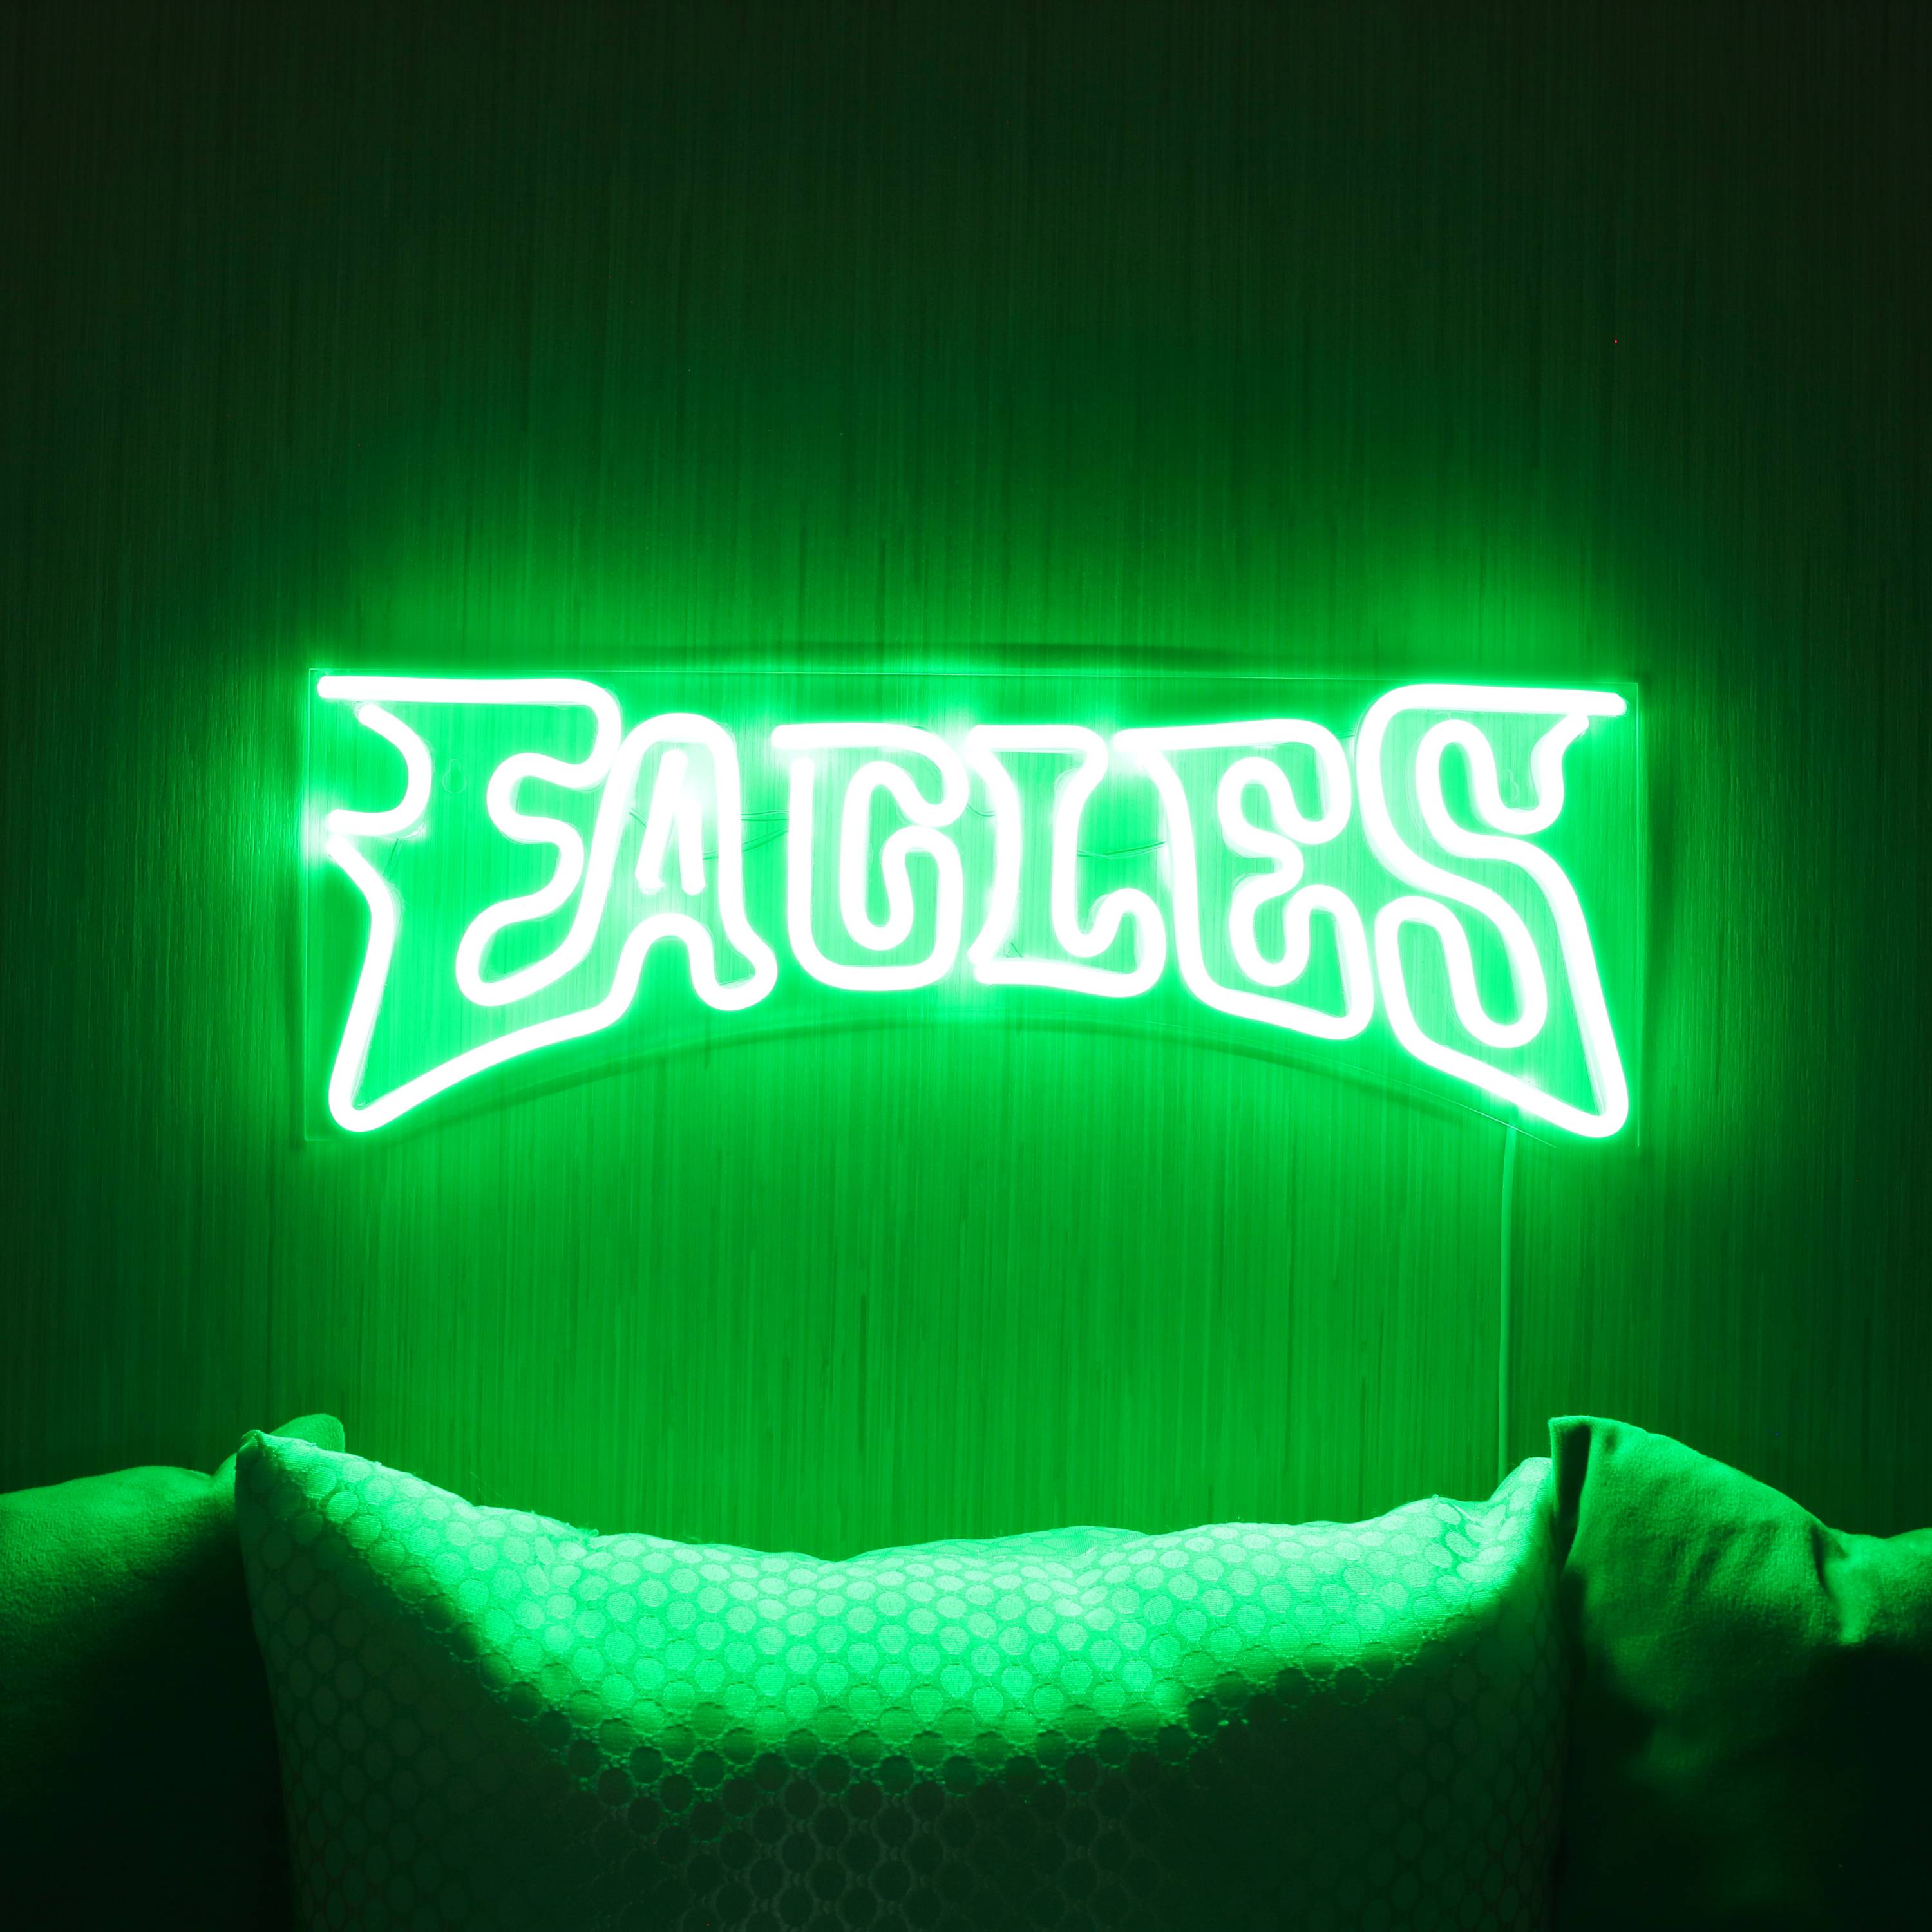 NFL EAGLES Large Flex Neon LED Sign